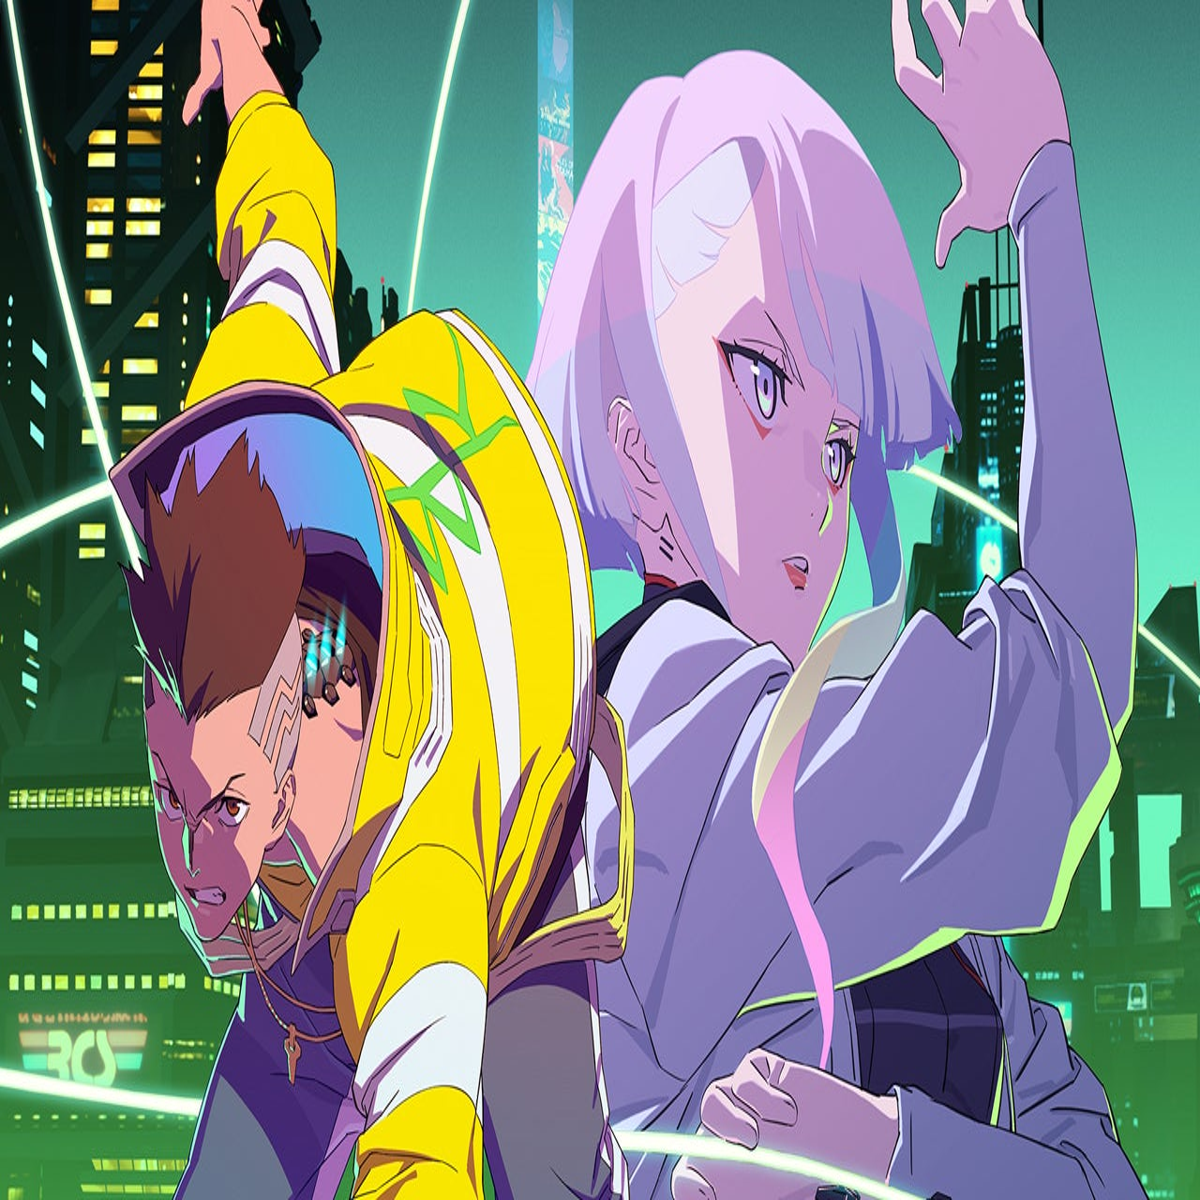 Cyberpunk: Edgerunners Anime Reveals New Trailer, Japanese Cast - News -  Anime News Network